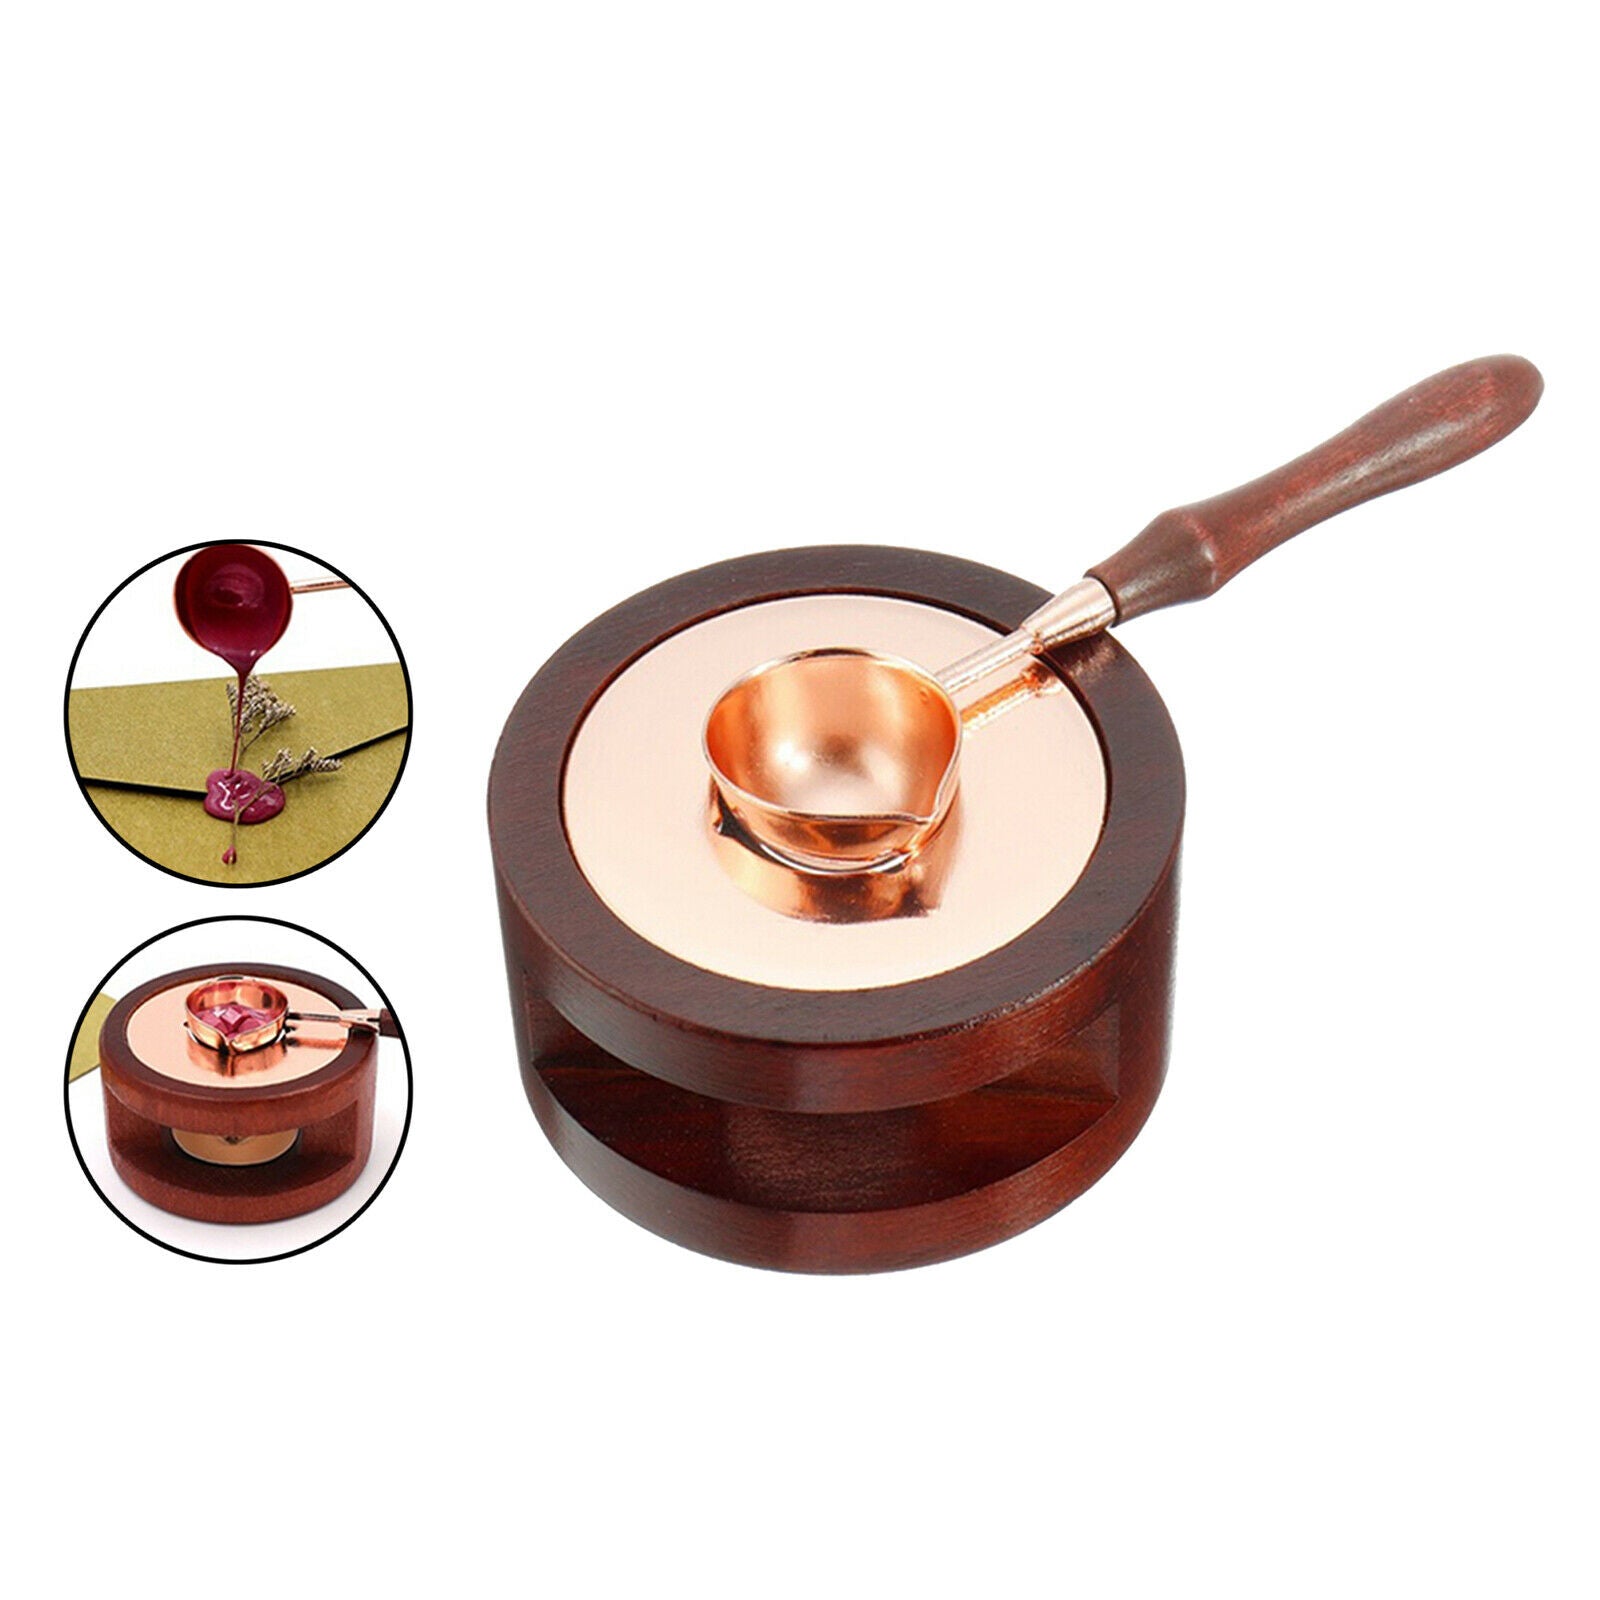 Wax Melting Wax Tripod Furnace Included Wood Handle Sealing Wax Spoon